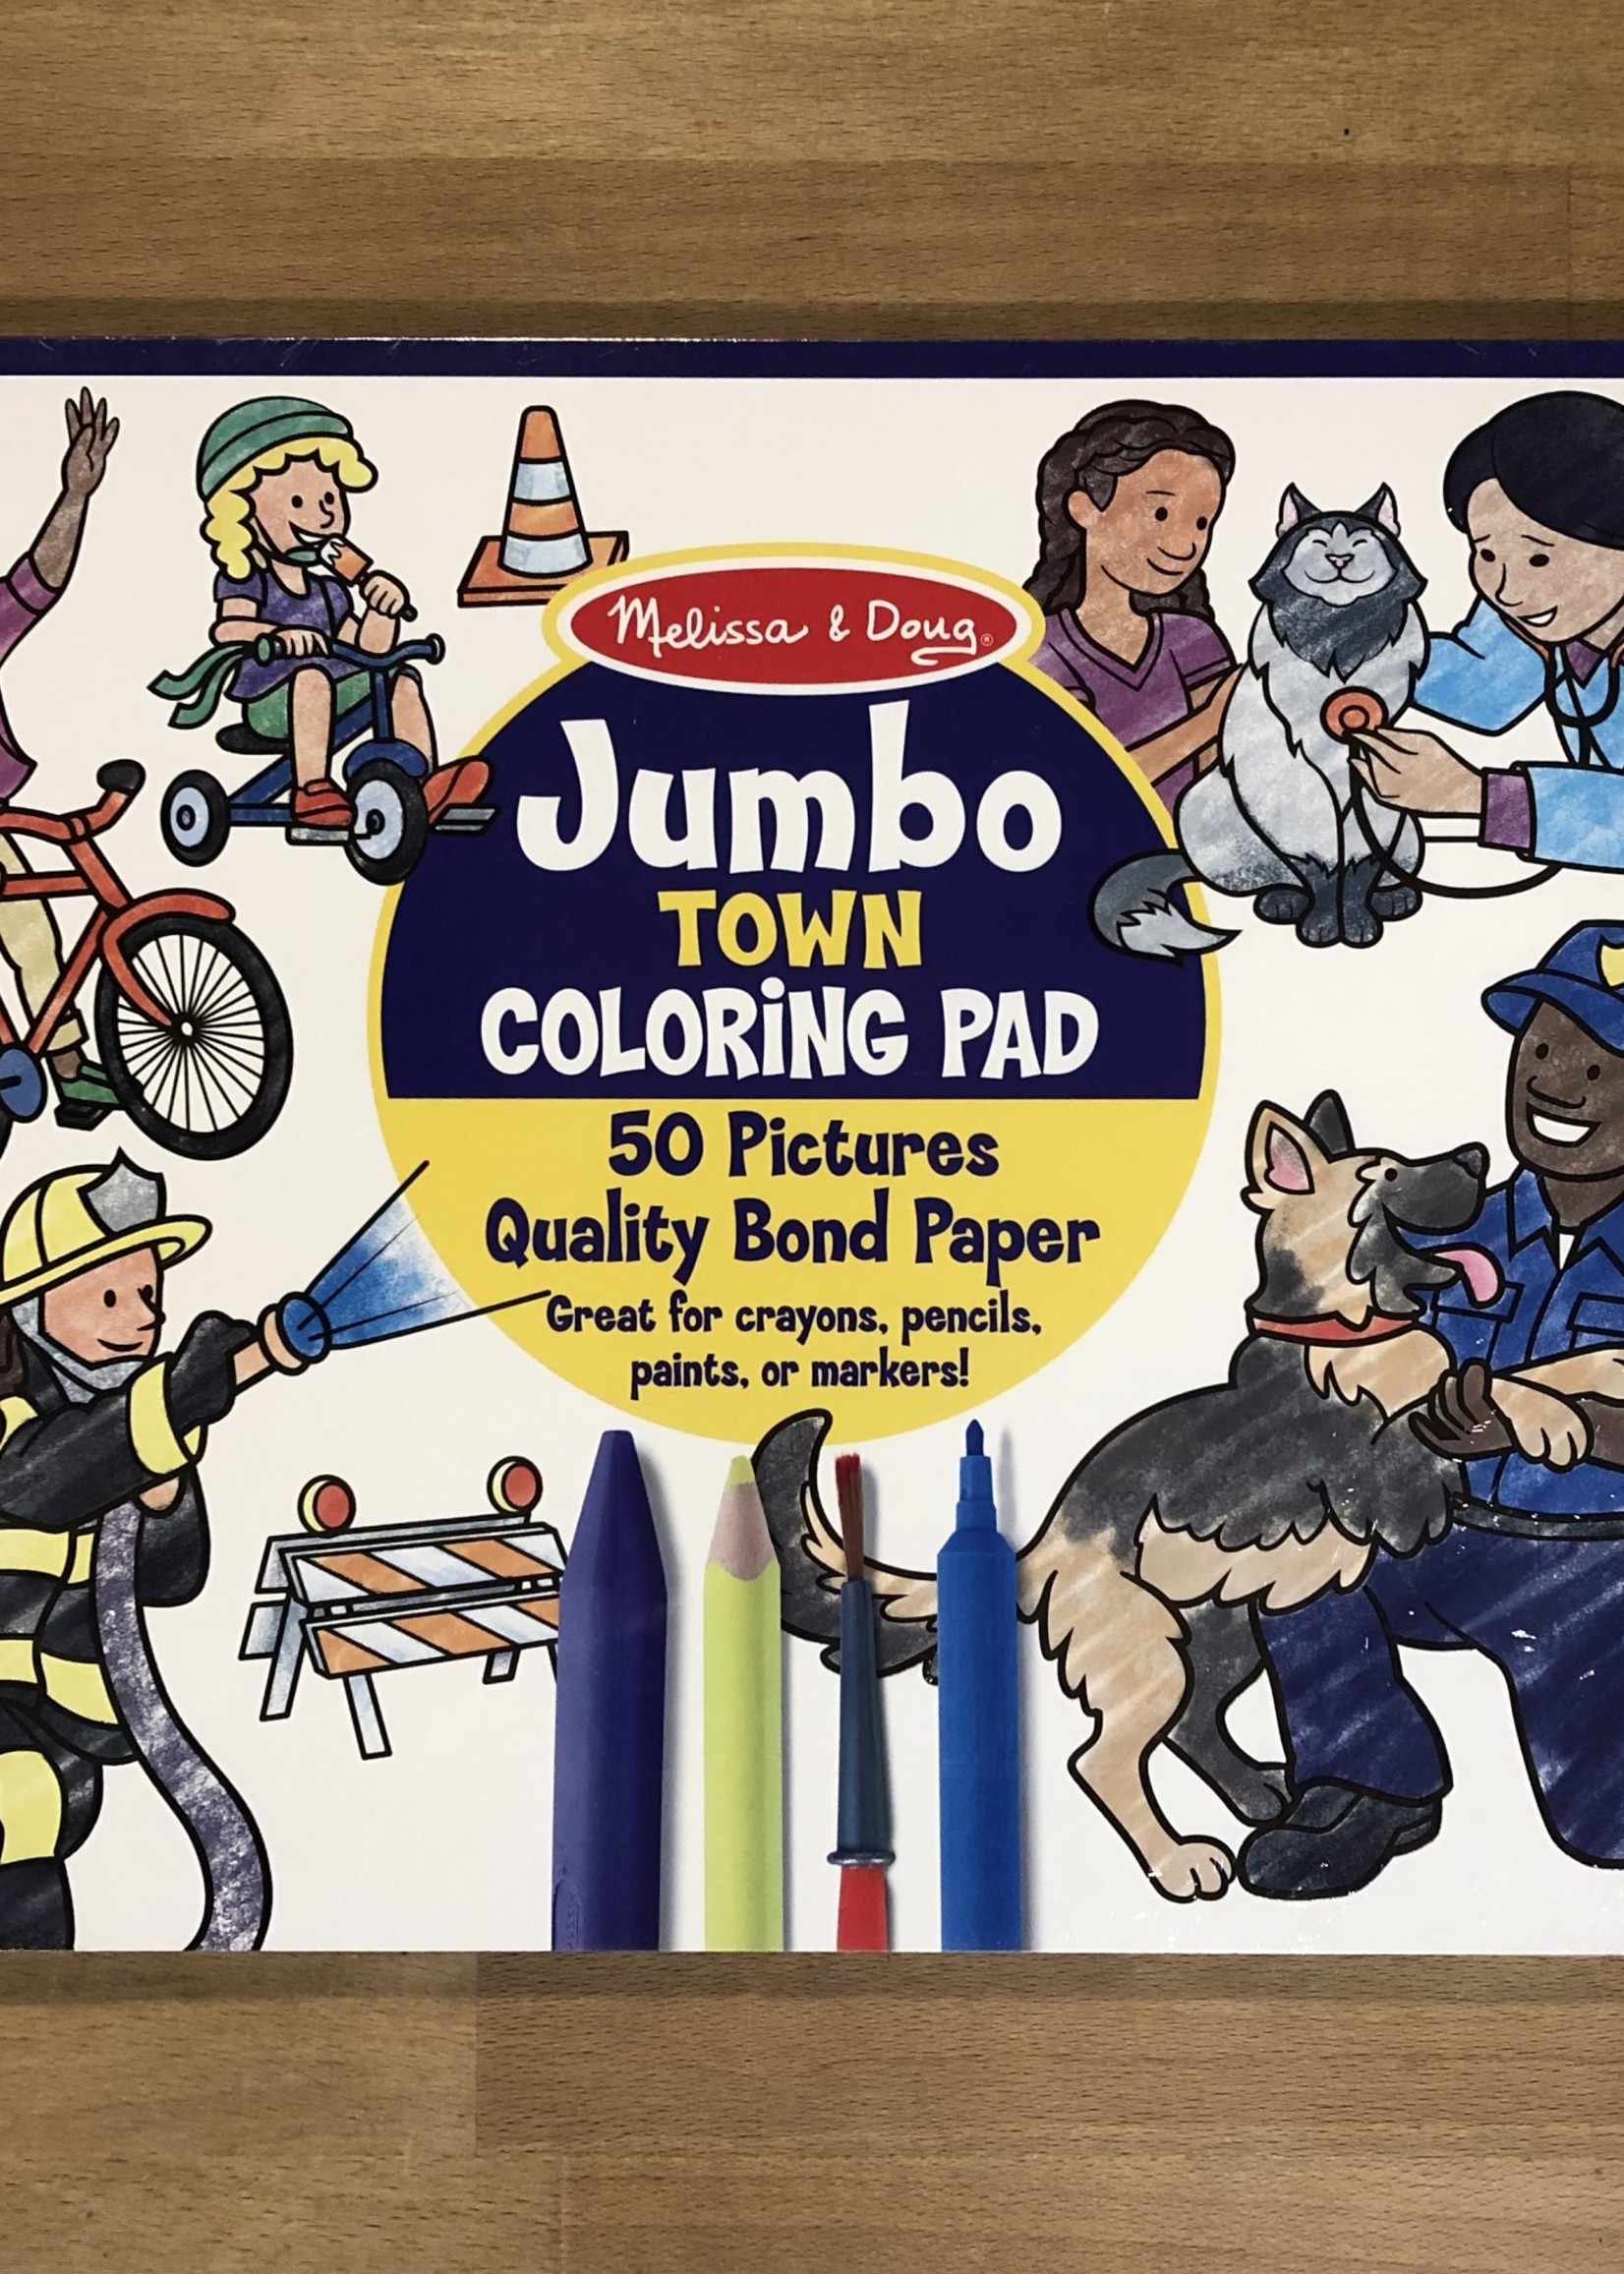 Melissa & Doug Jumbo Coloring Pad - Town